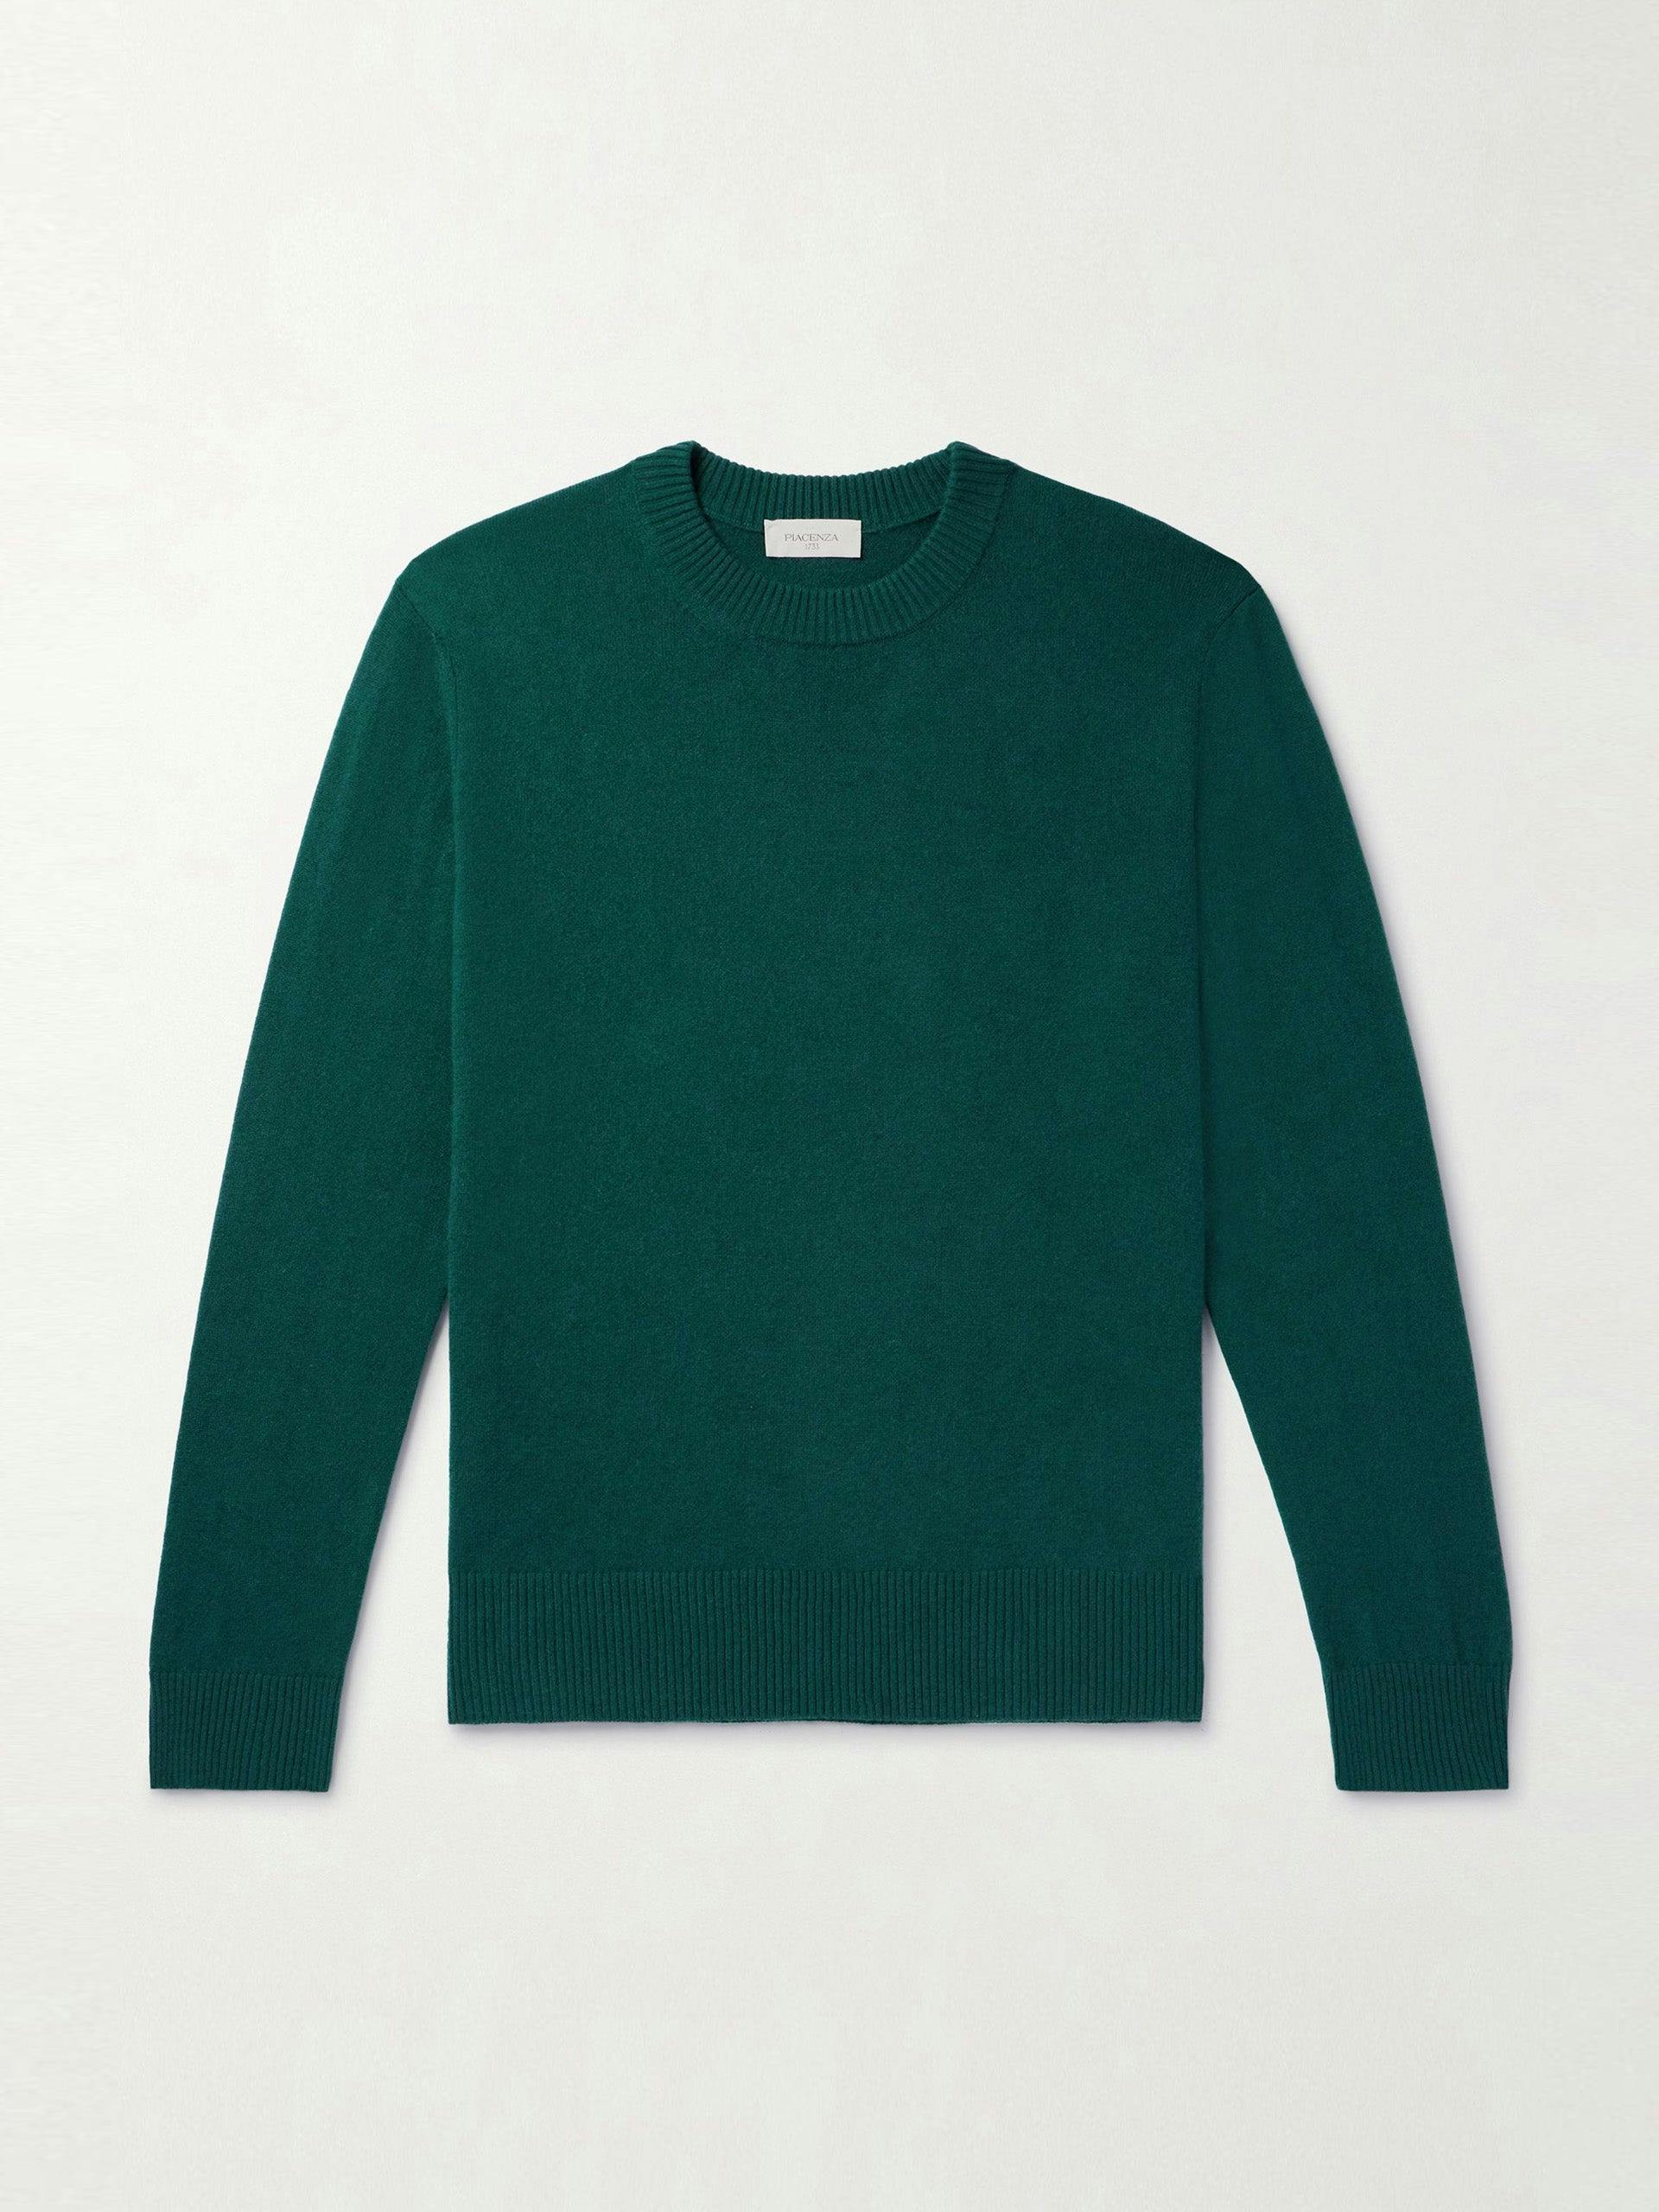 Dark green cashmere sweater